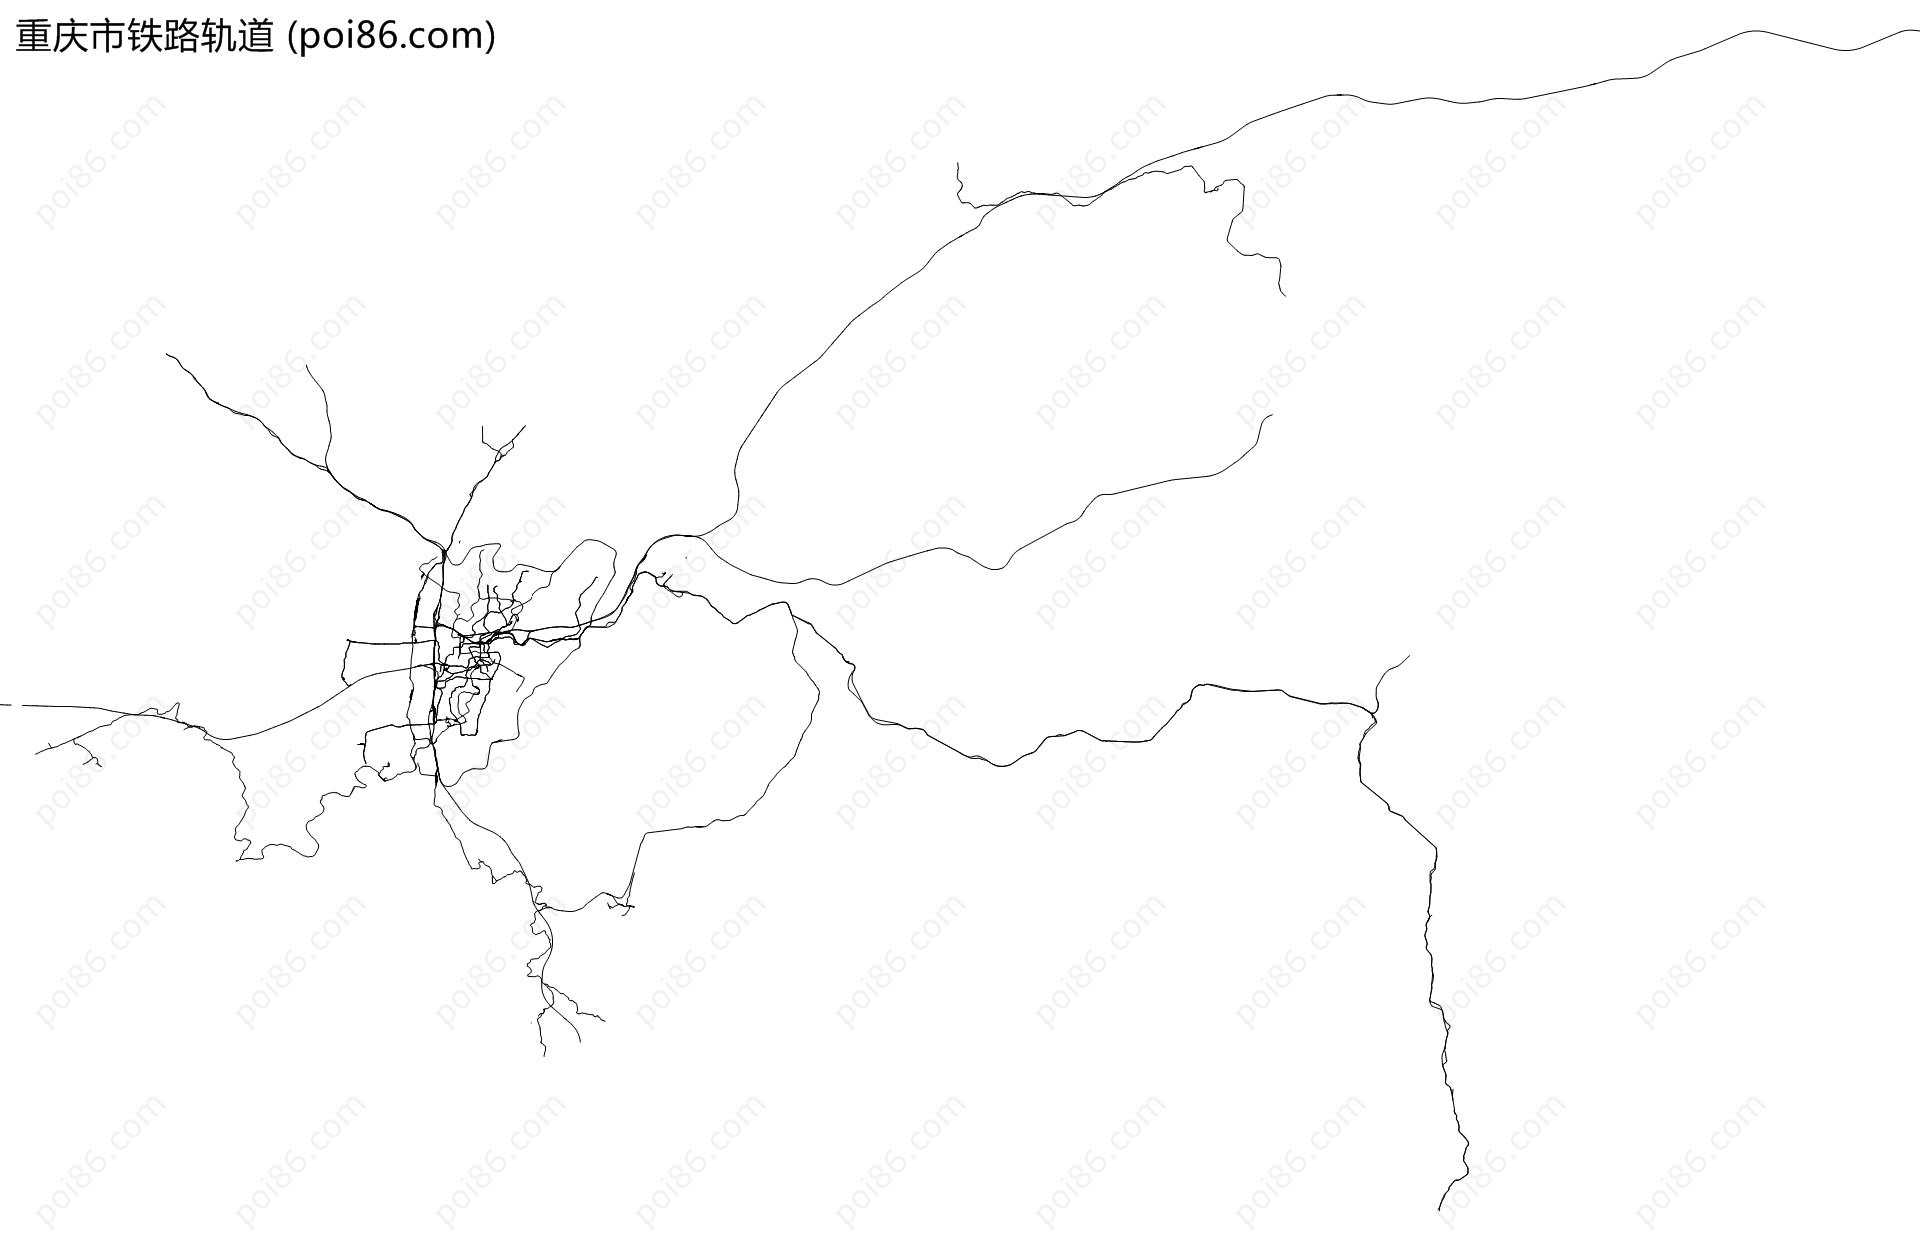 重庆市铁路轨道地图